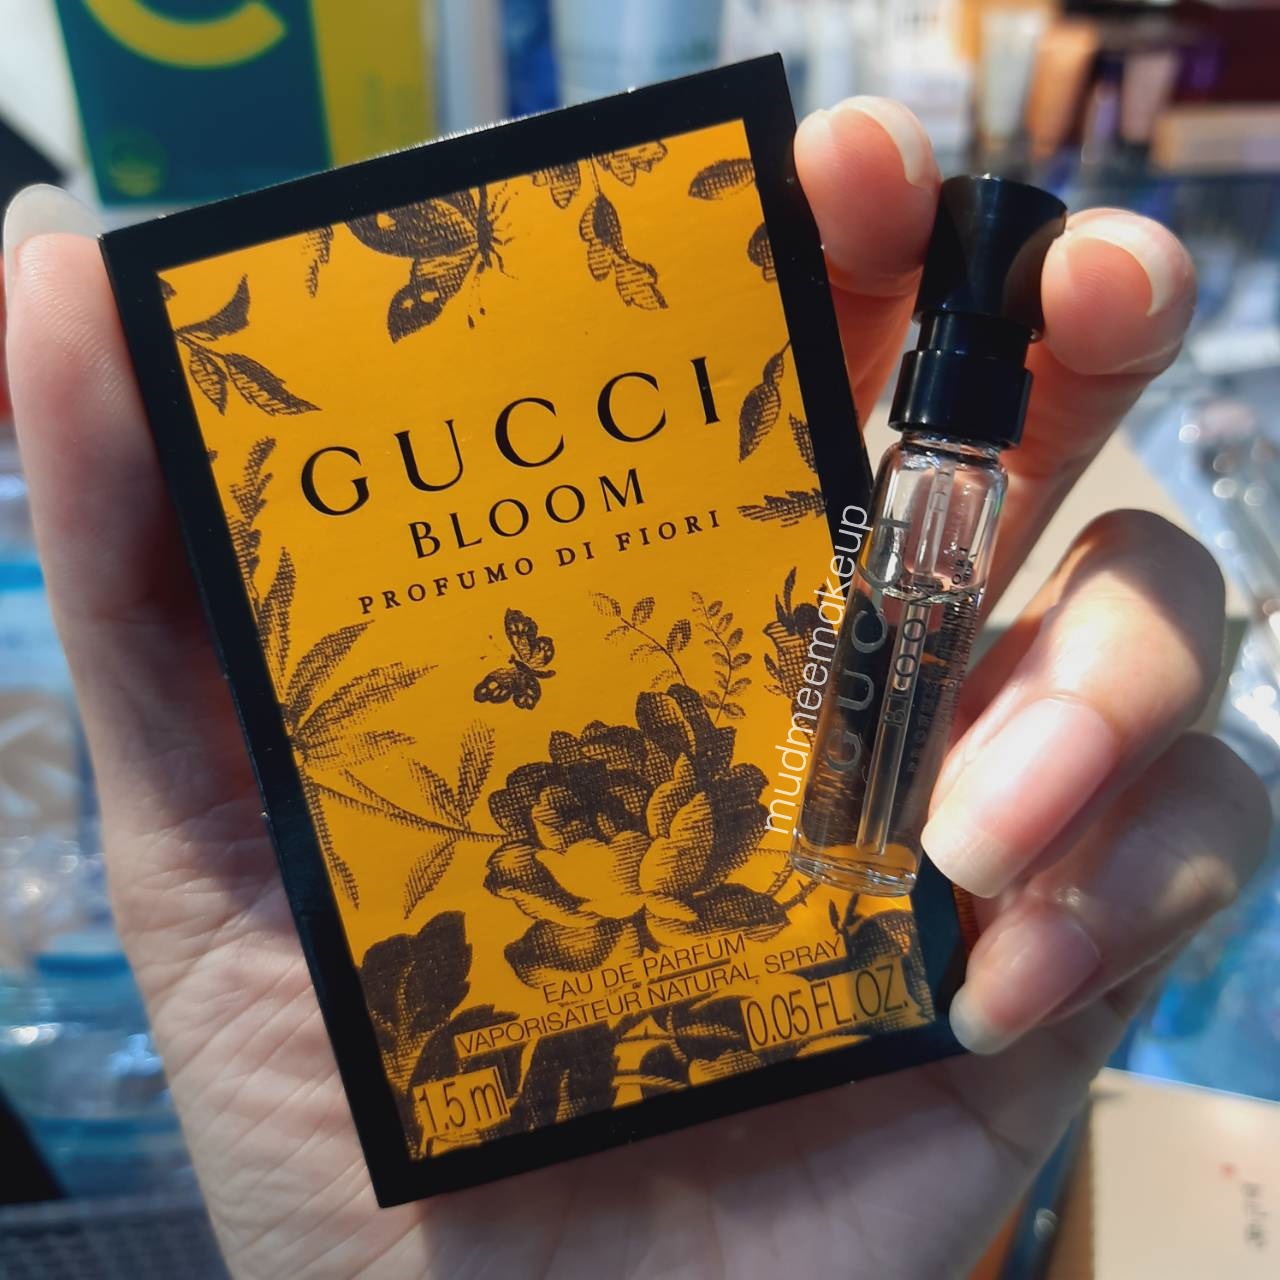 Gucci Bloom Profumo di Fiori Eau de Parfum 1.5ml